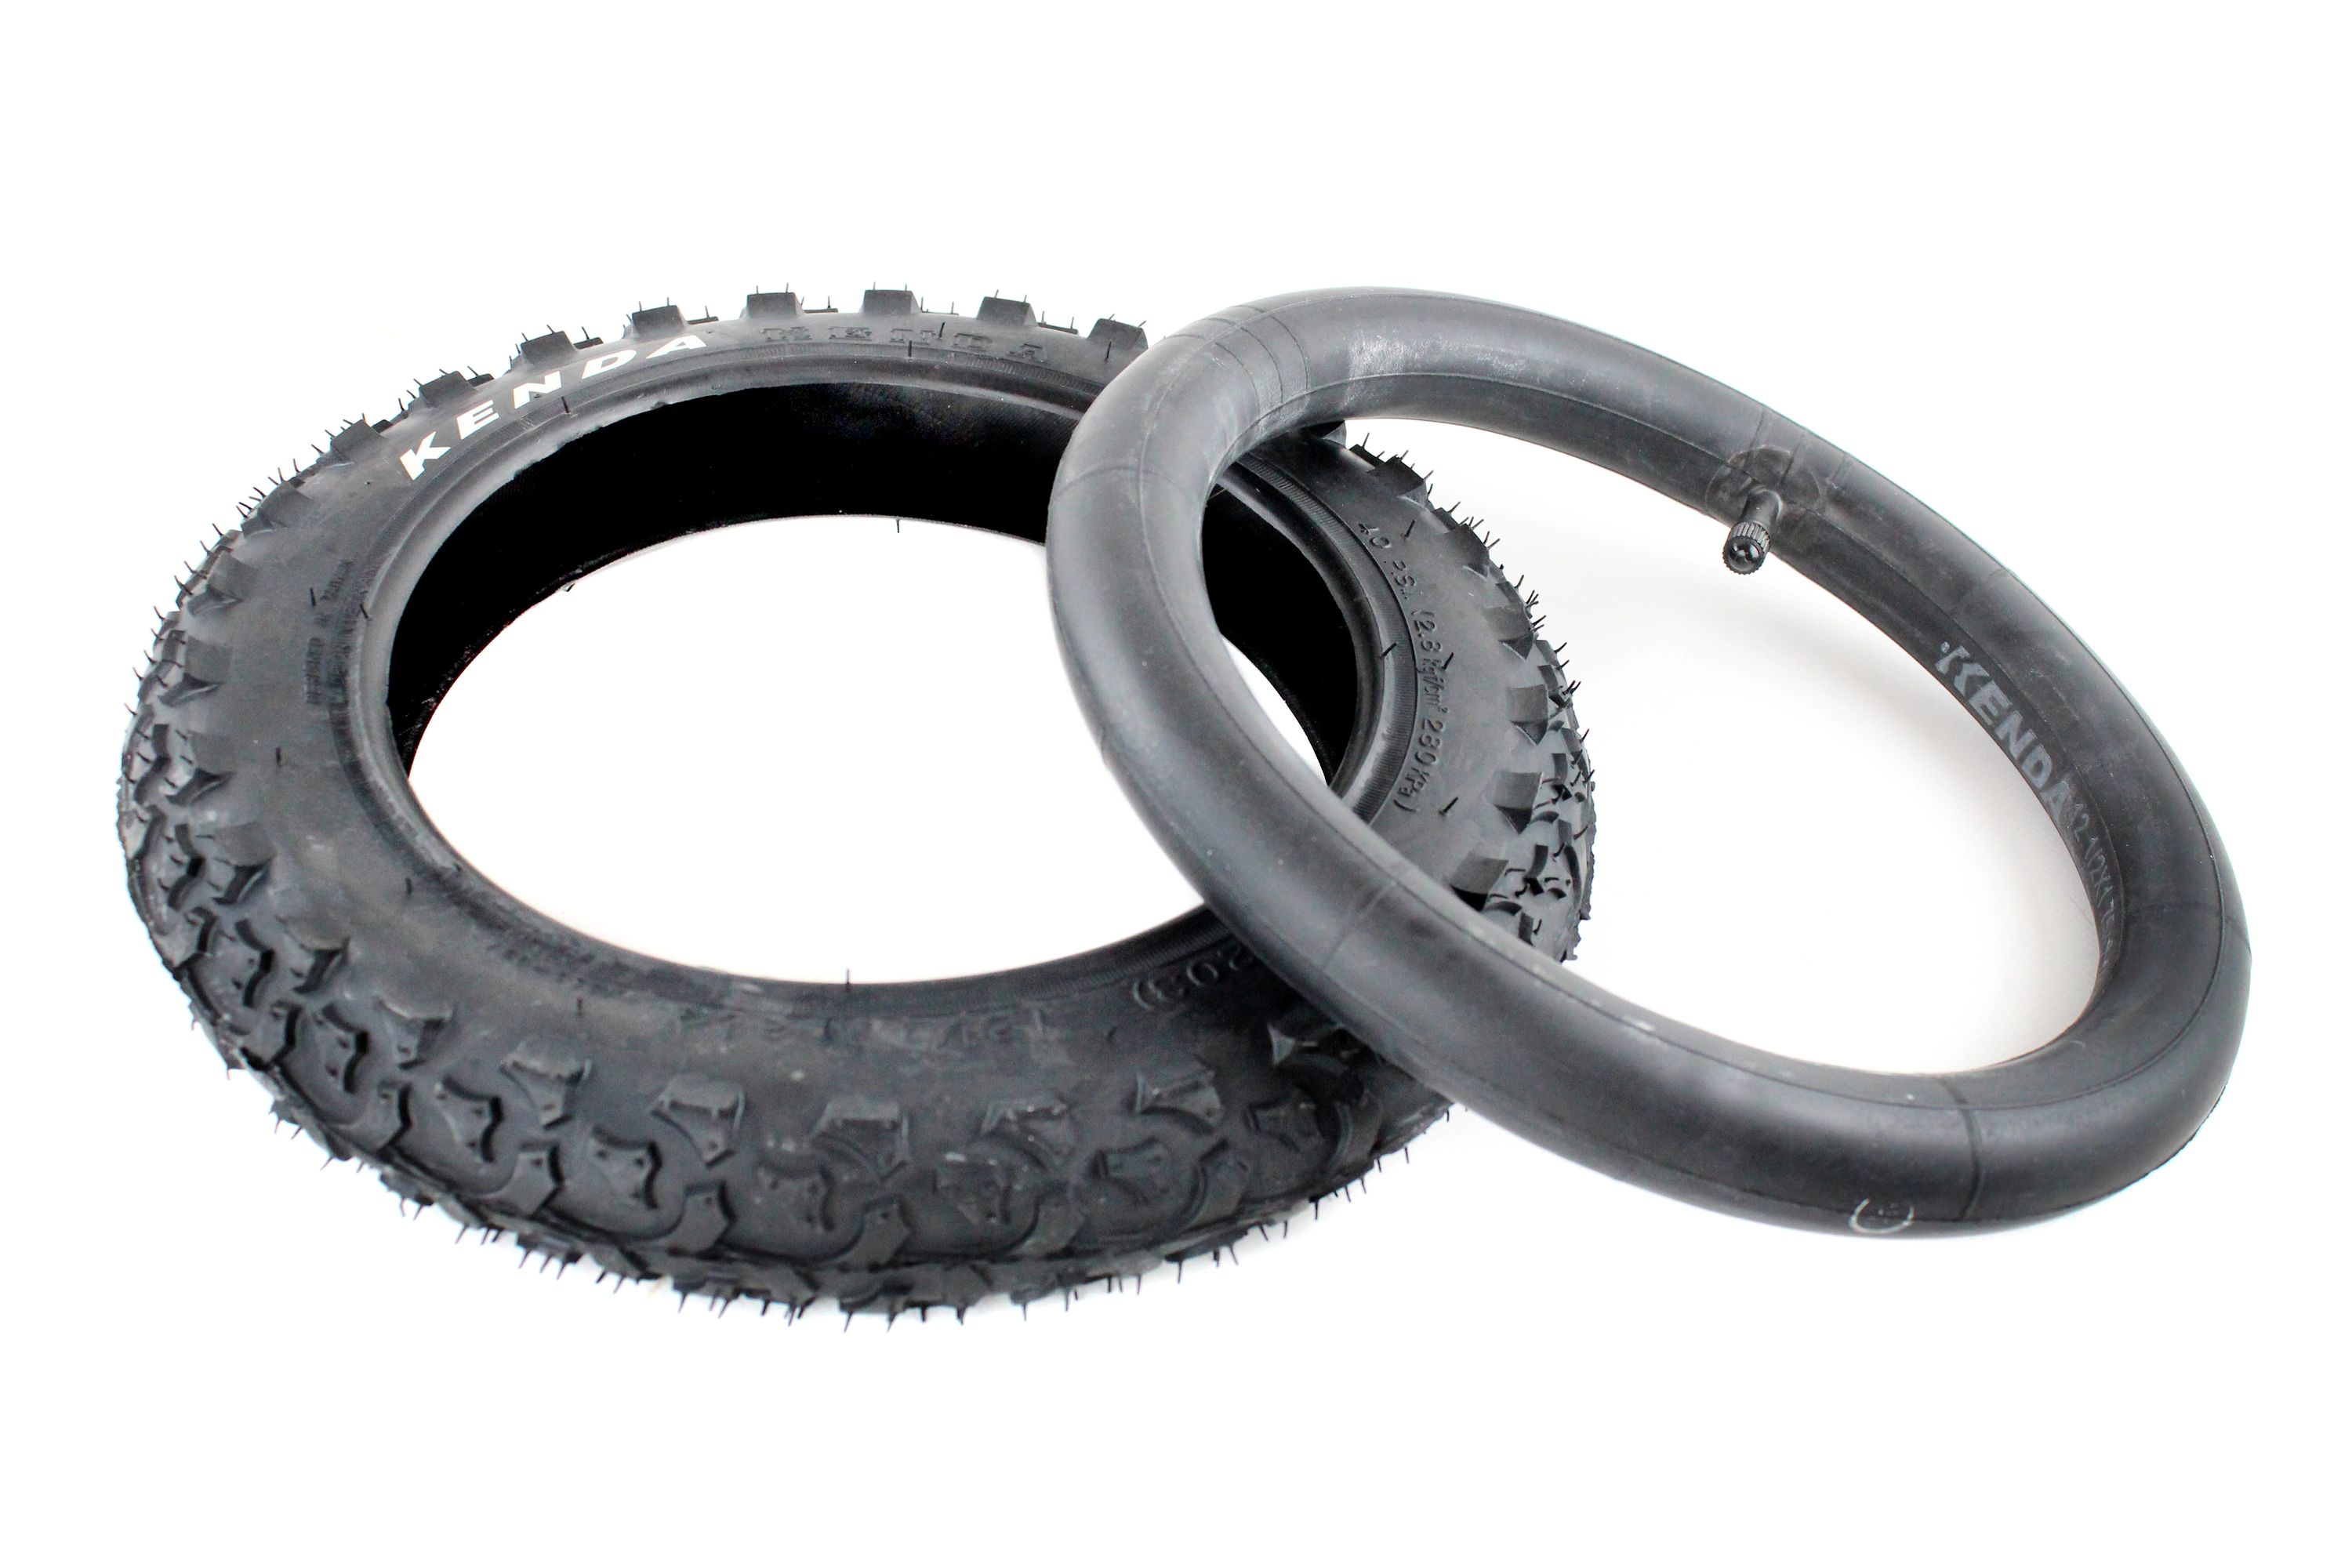 Reifen Schlauchloser Reifen Roller Schwarz Selbstreparatur Für